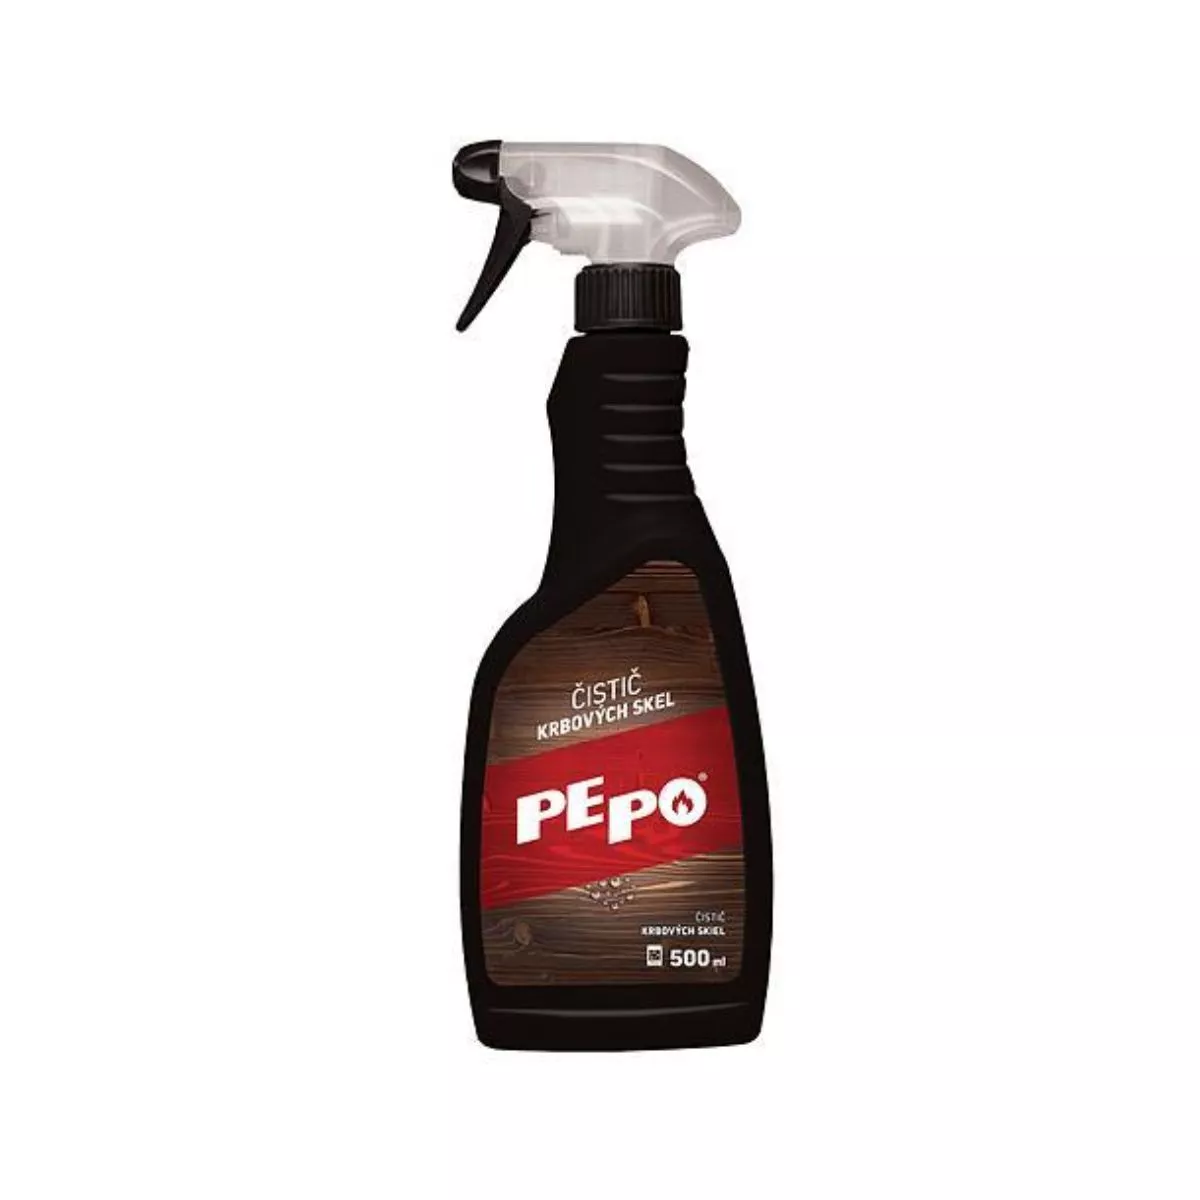 Detergent pentru curatarea gratarelor/semineelor. 500 ml. PE-PO 1